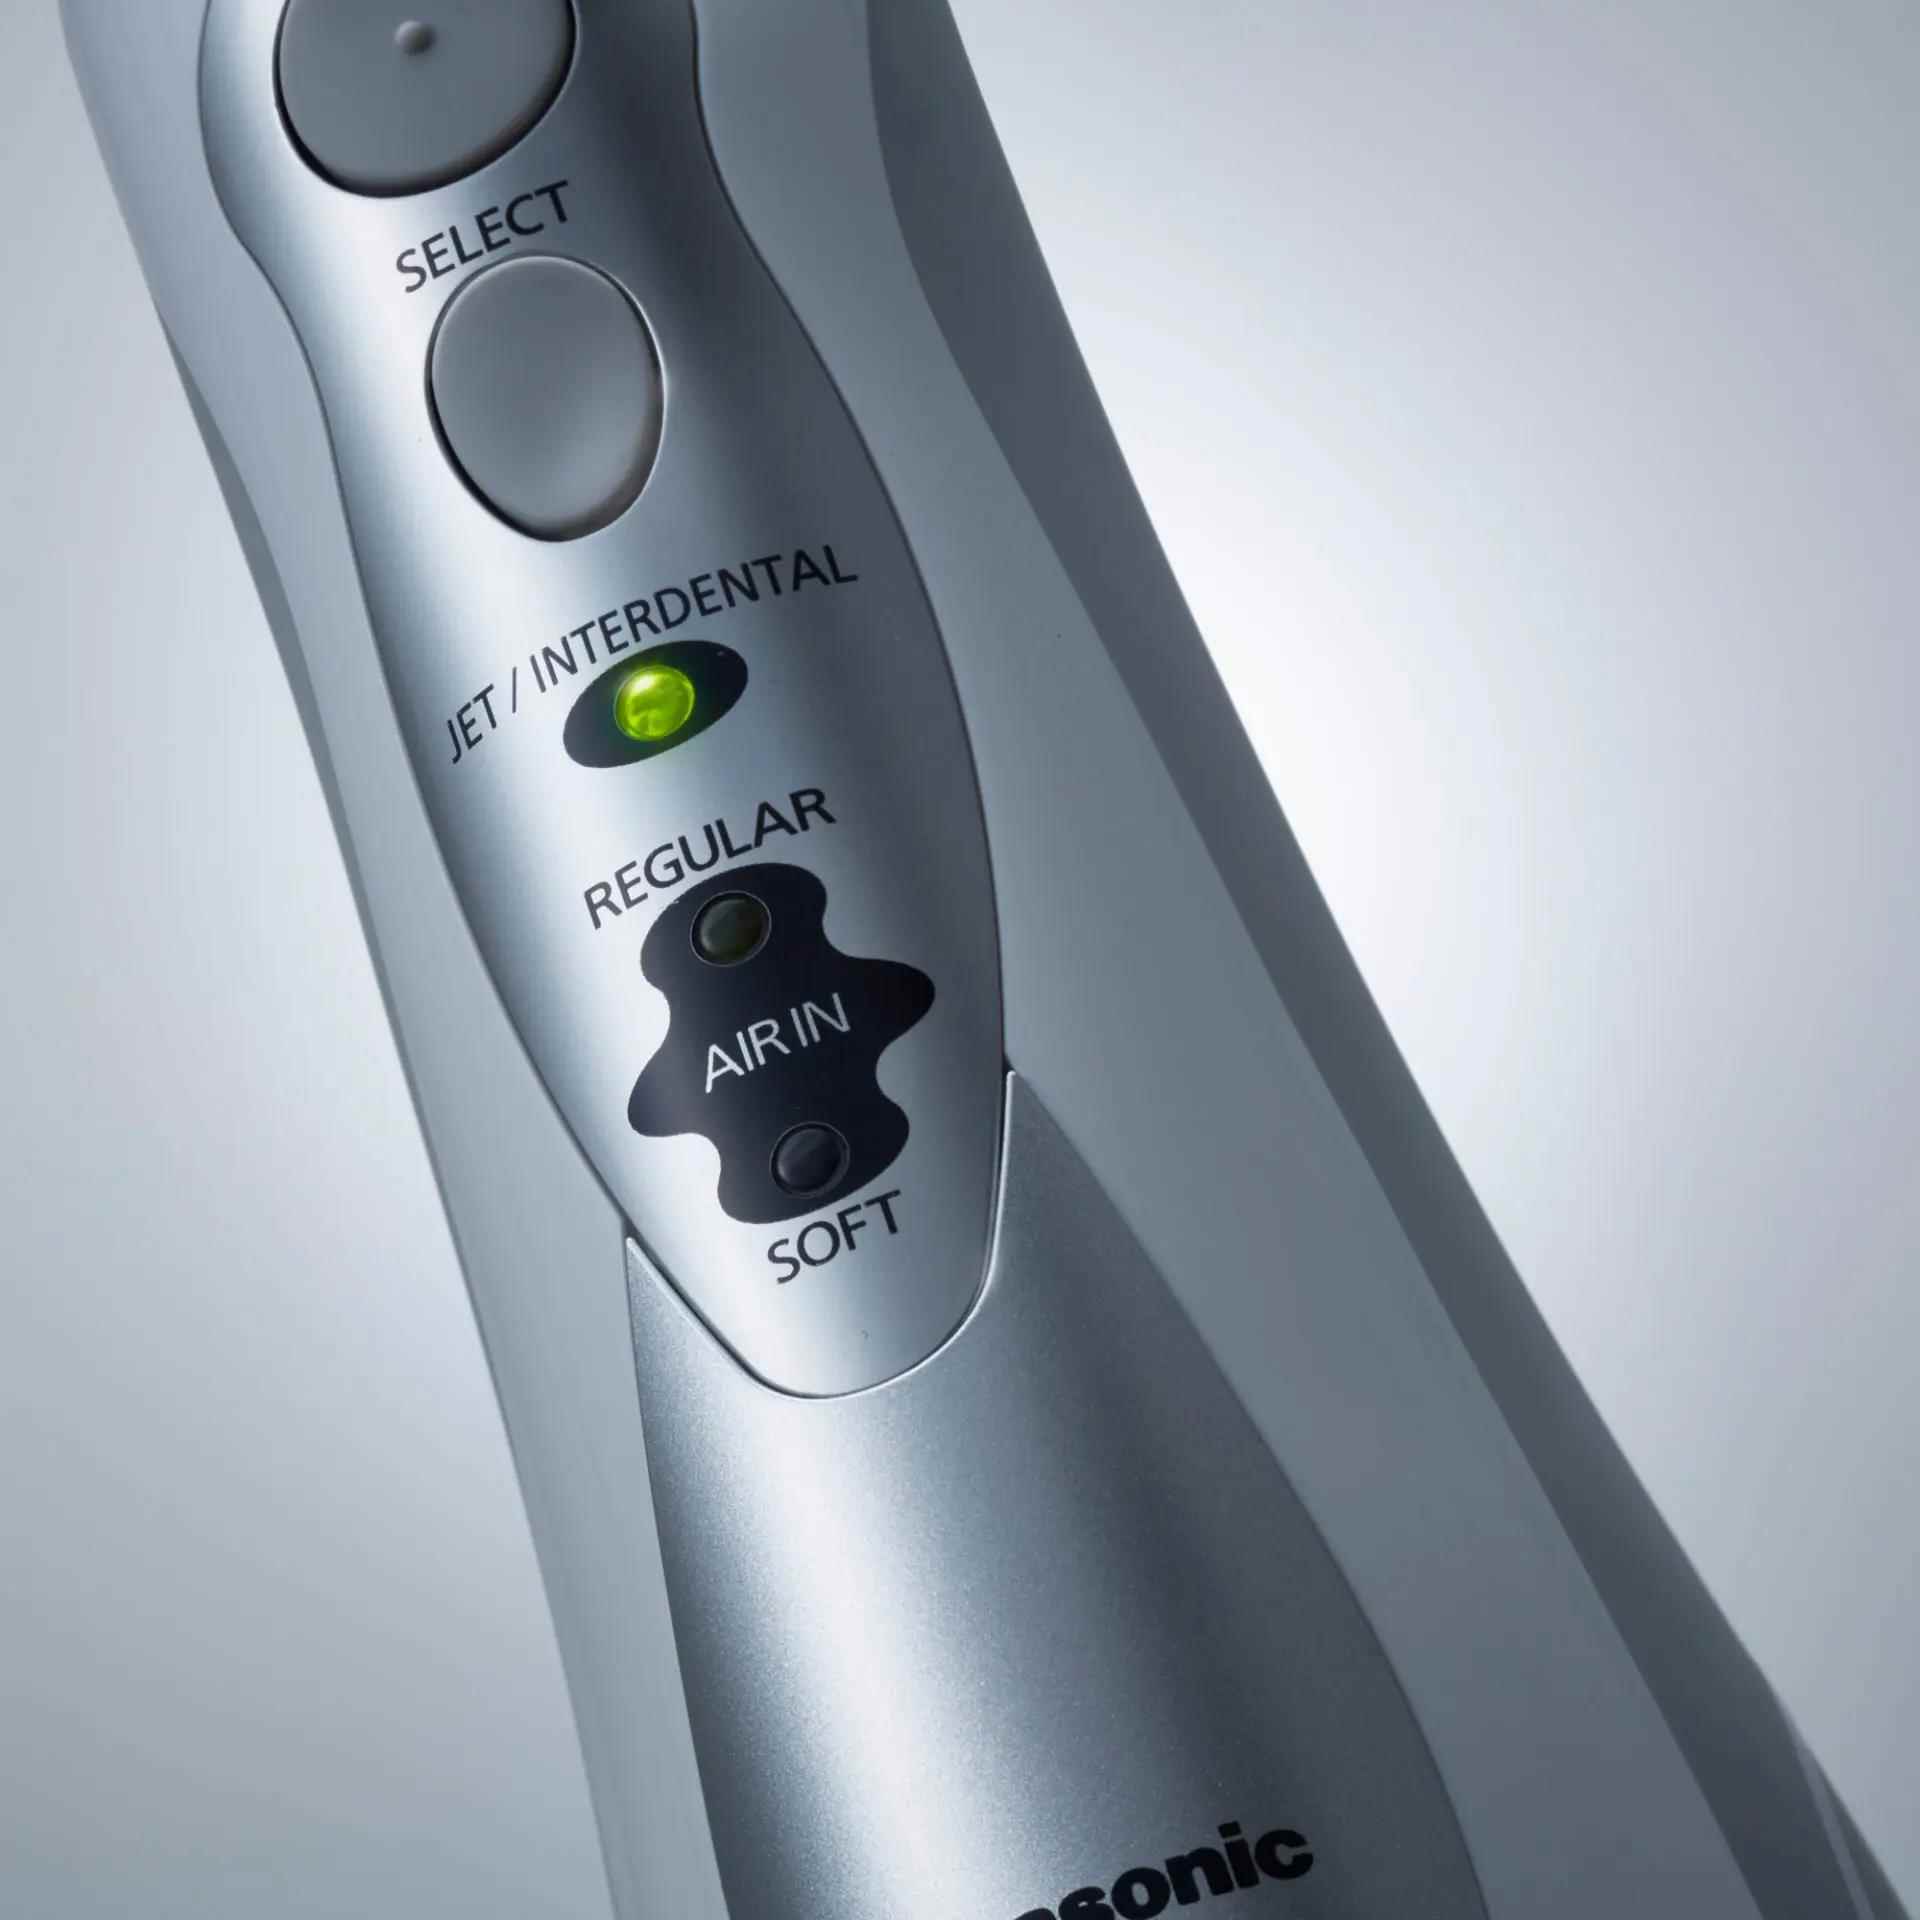 Panasonic EW1411H845 ústní sprcha, 1400 pulzů, 130 ml, 3 stupně nastavení, nabíjecí akumulátor, bílá1 